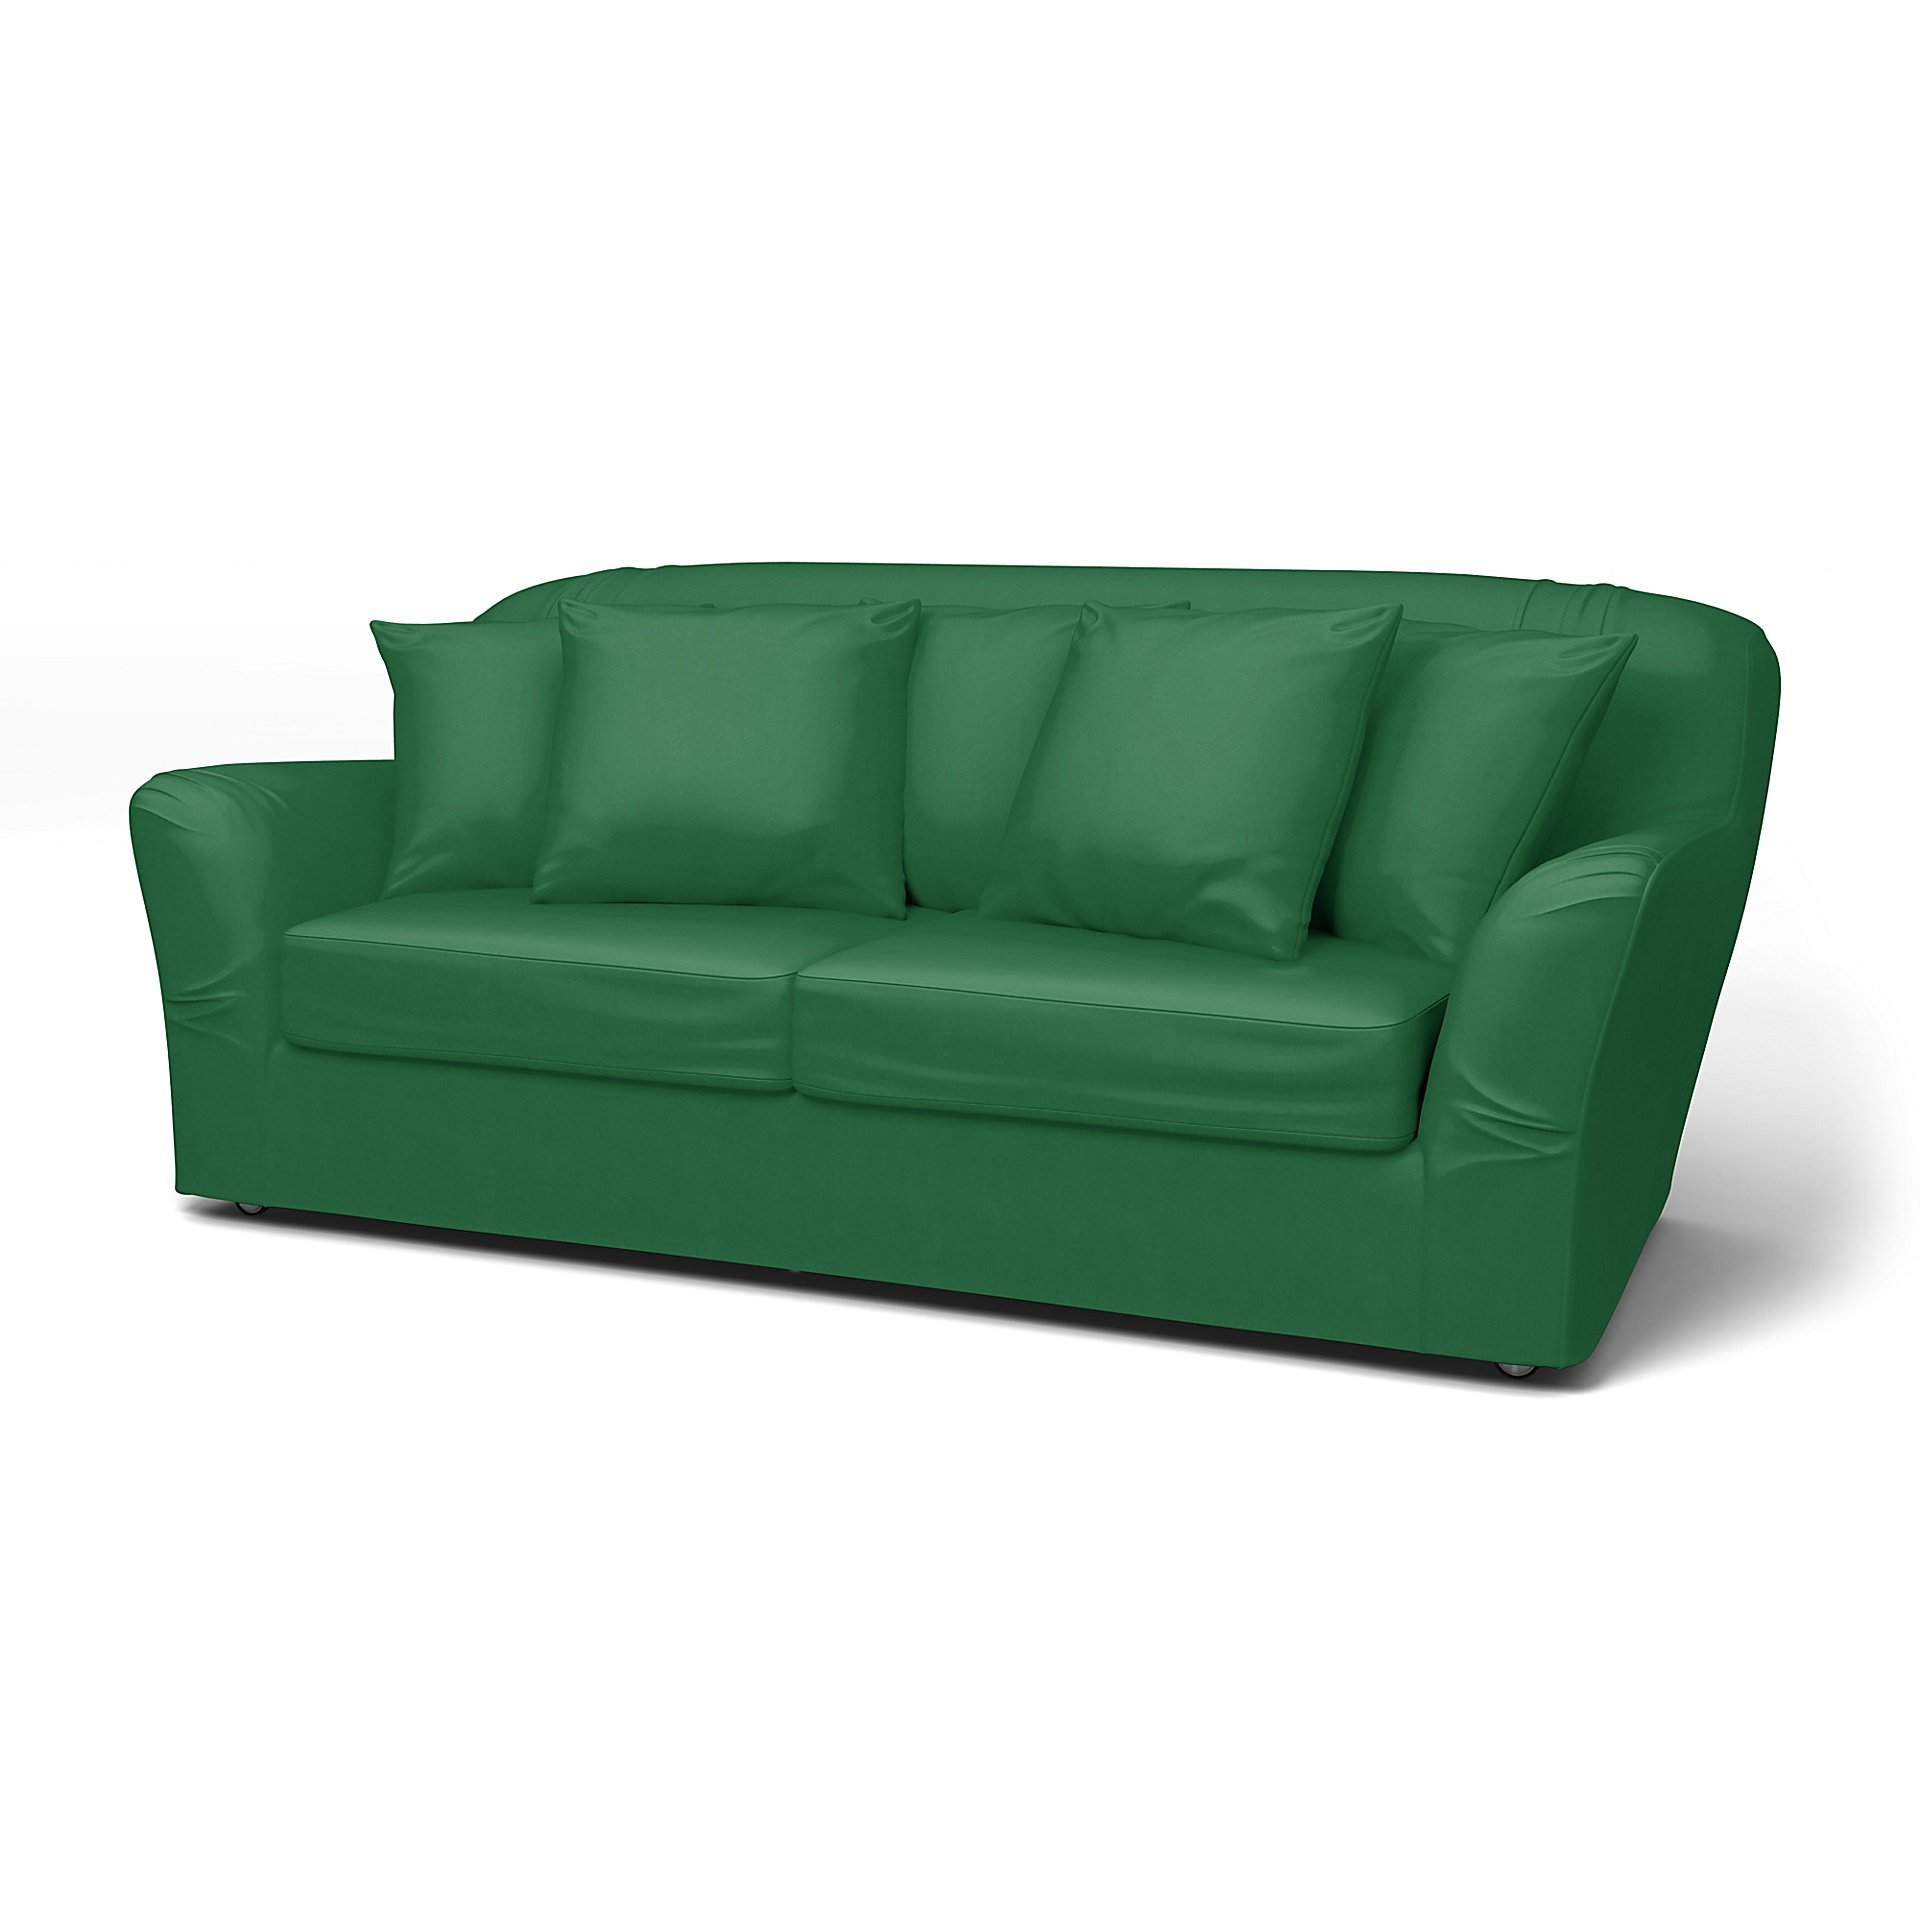 IKEA - Tomelilla Sofa Bed Cover (Small model), Abundant Green, Velvet - Bemz